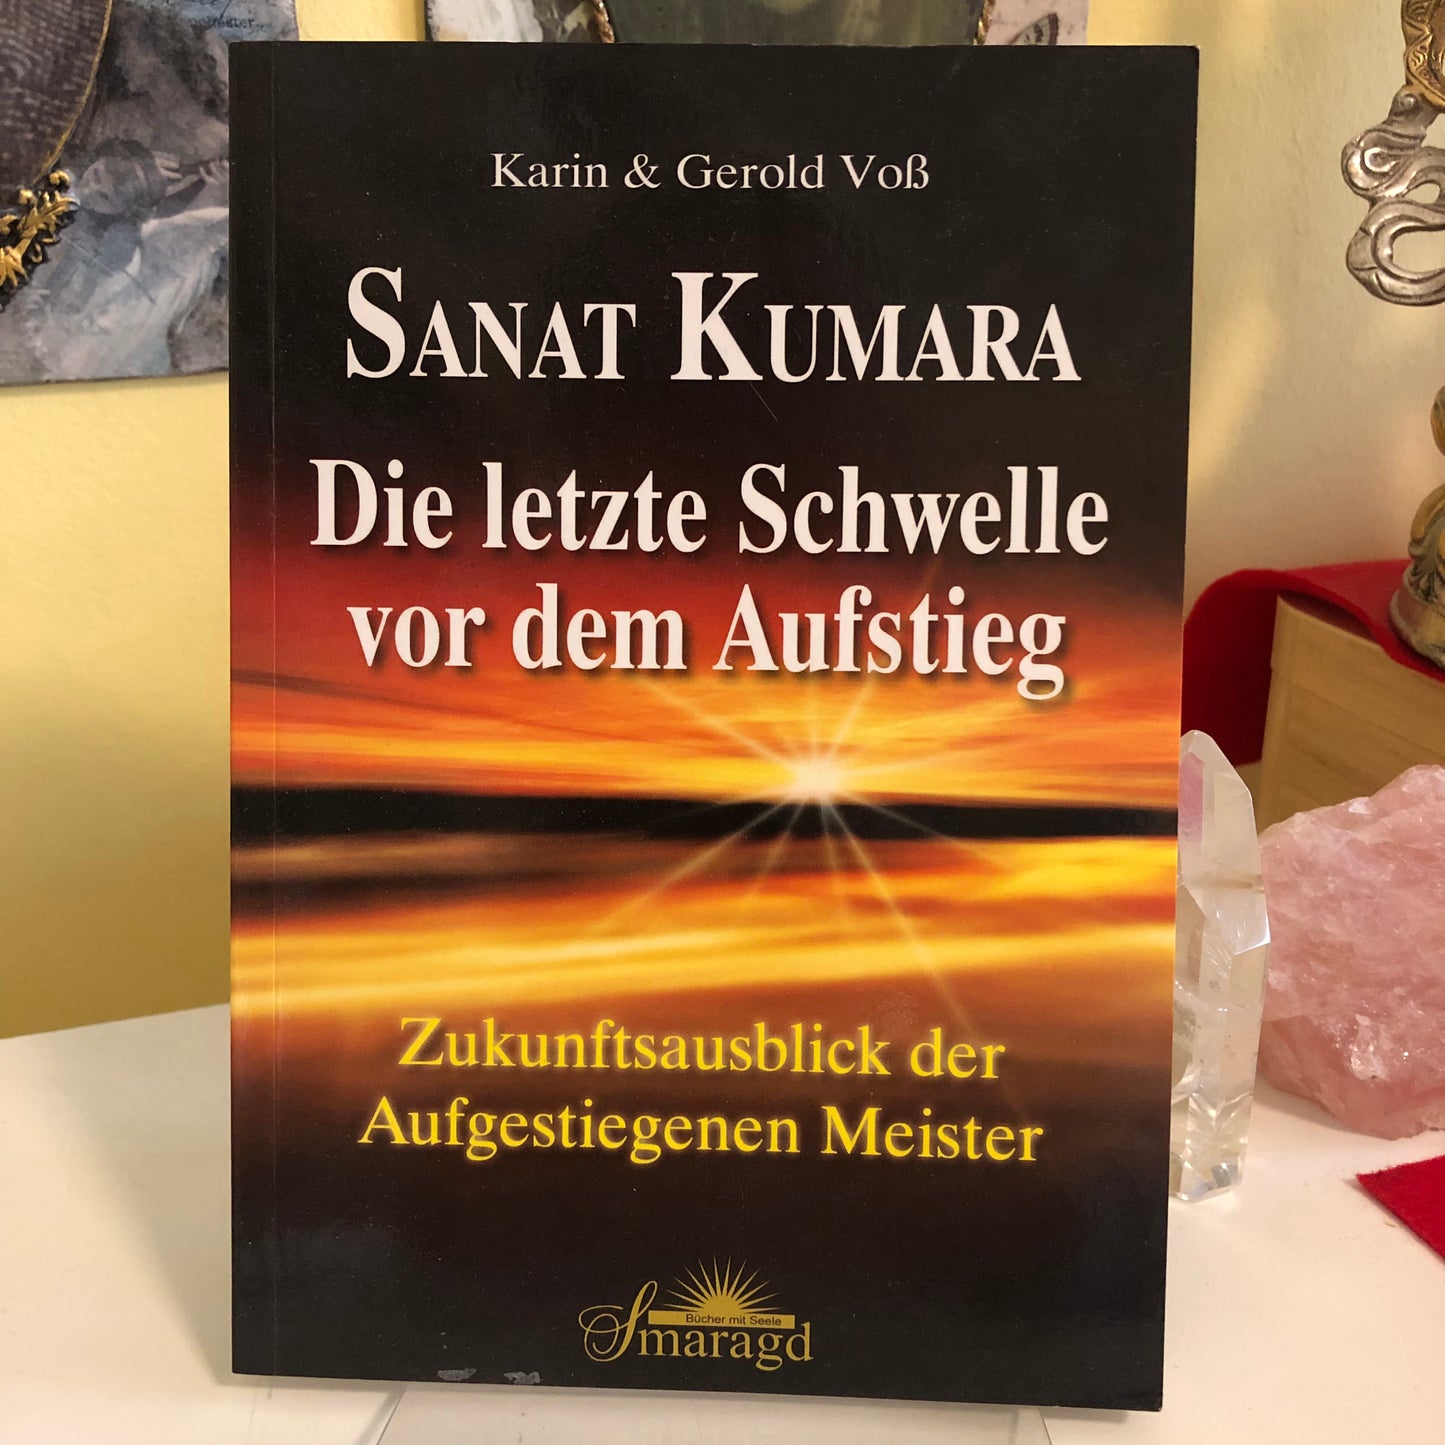 Die letzte Schwelle vor dem Aufstieg - Sanat Kumara, Karin & Gerold Voß